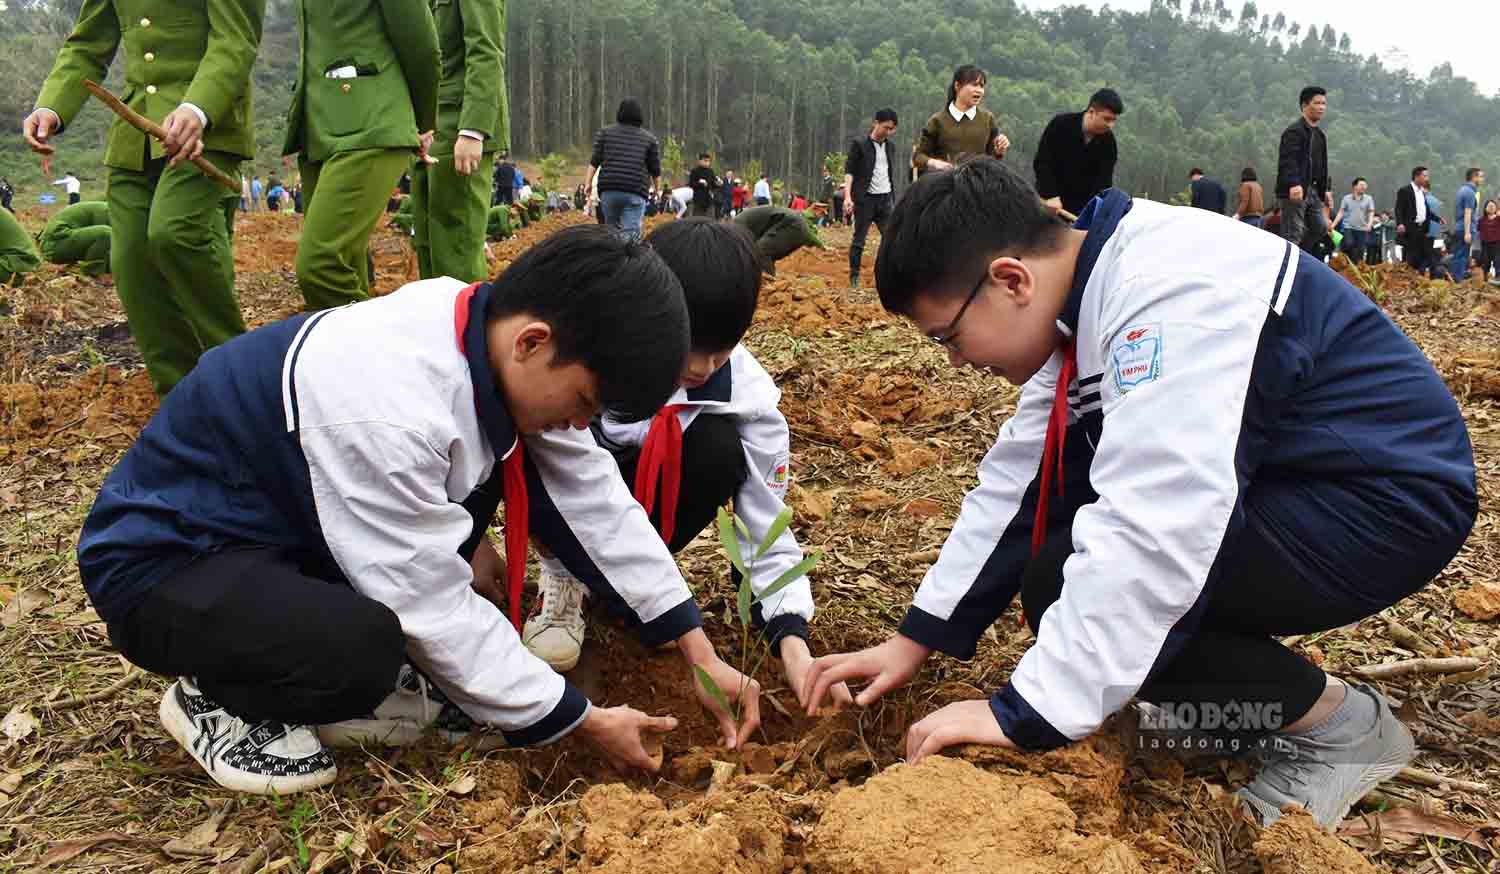  Hiện tỉ lệ che phủ rừng của tỉnh Tuyên Quang ổn định ở mức trên 65%, đứng nhóm đầu cả nước. Ảnh: Nguyễn Tùng.